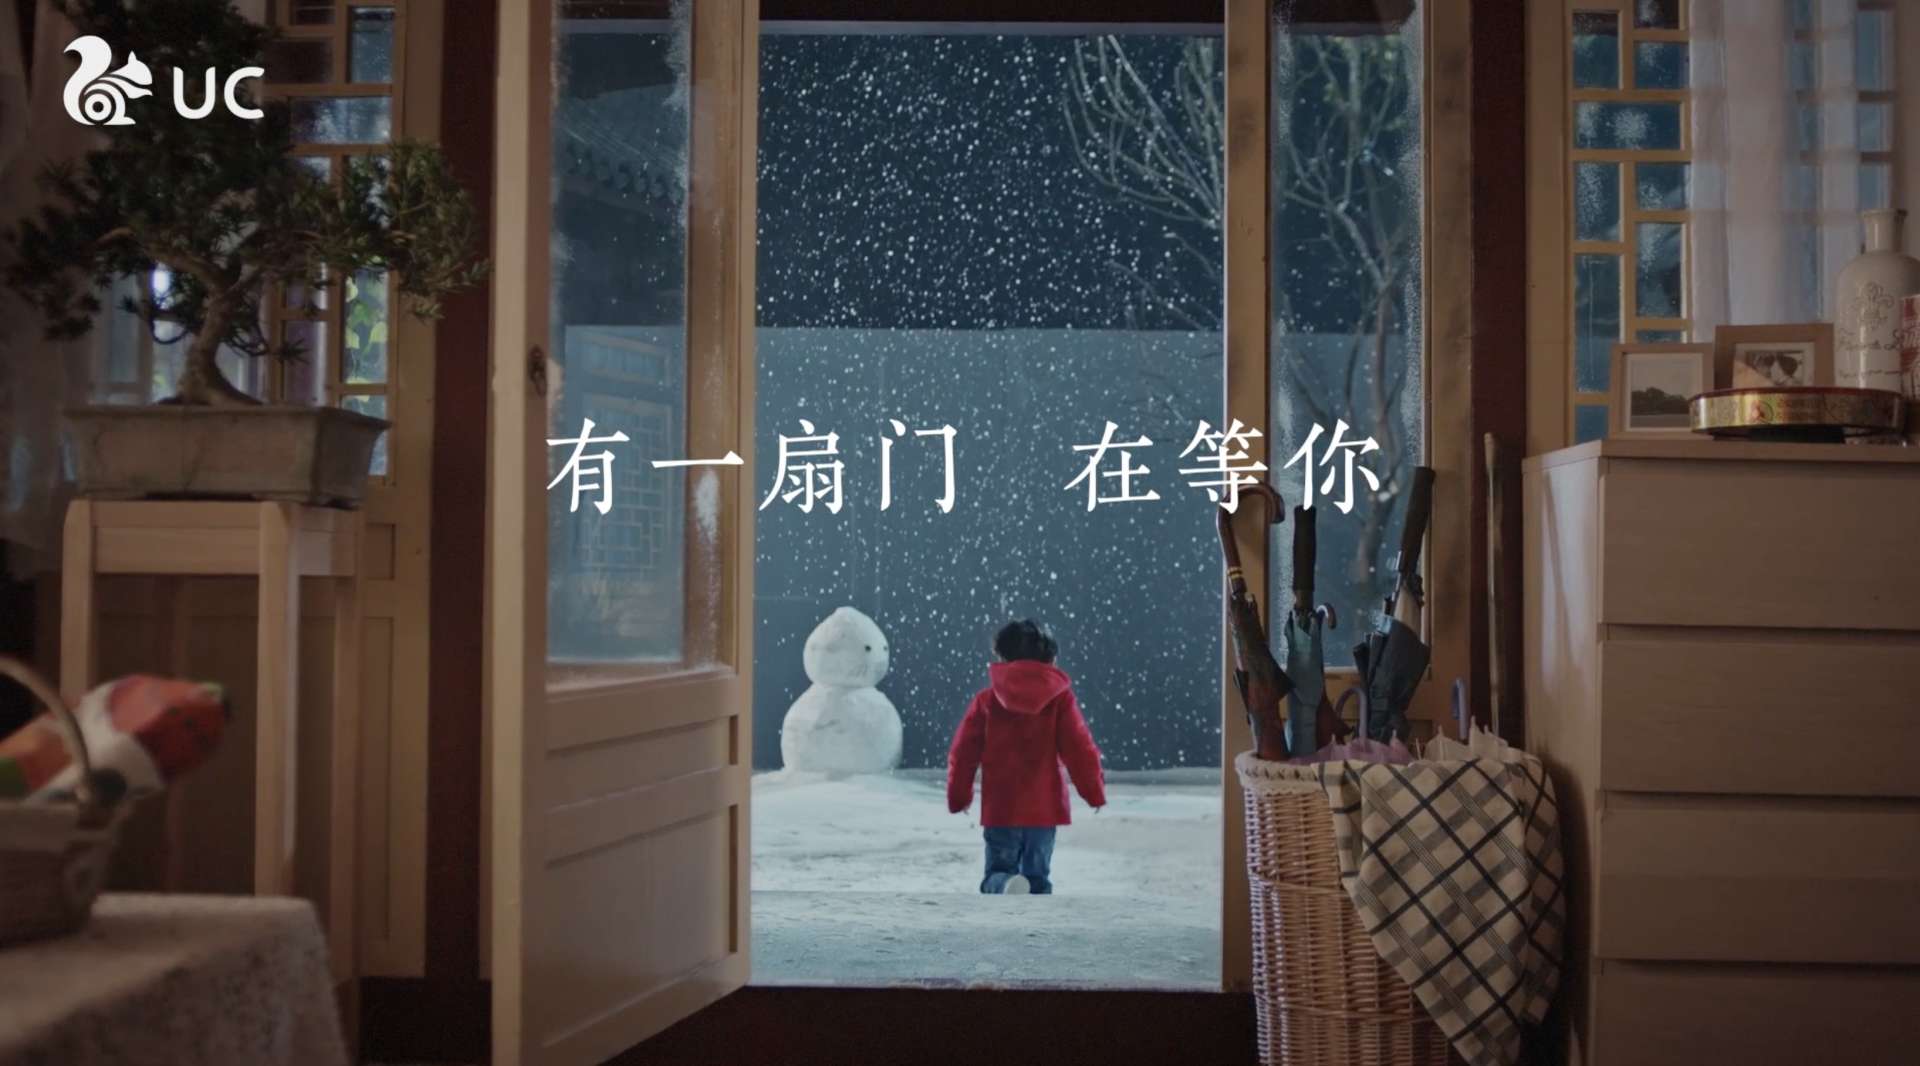 UC×飞猪春节广告片《门》